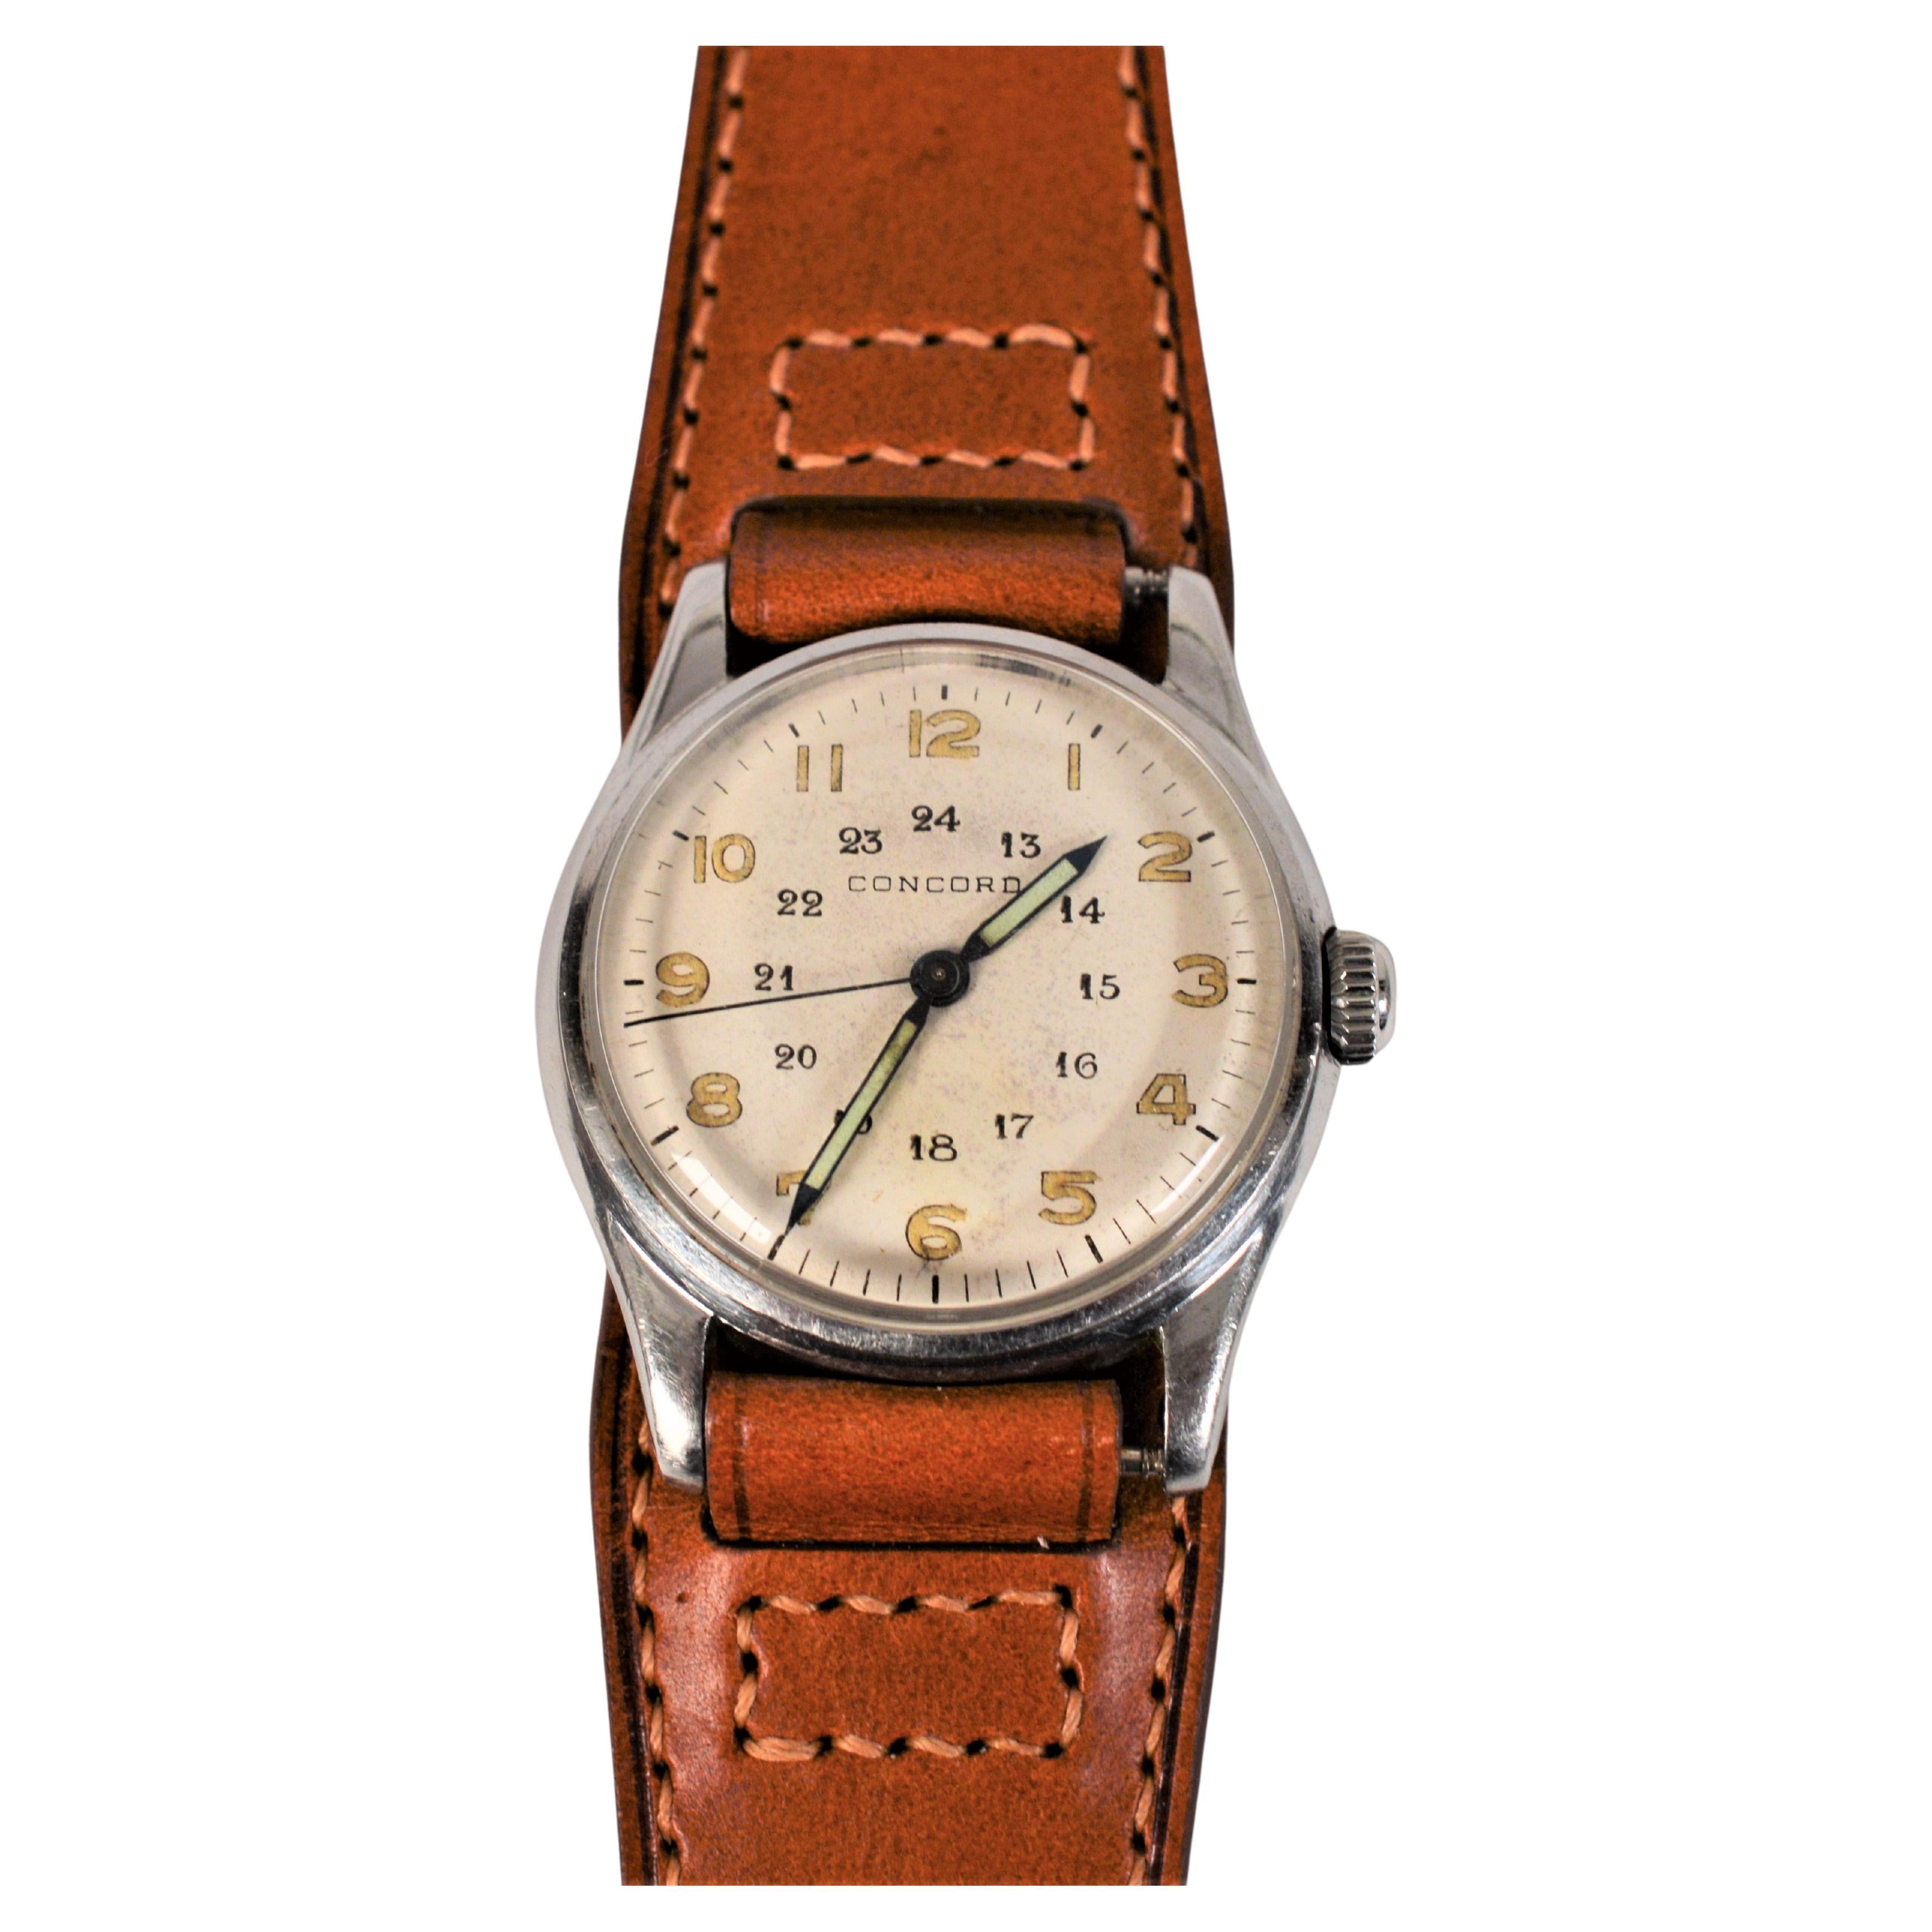 Profitez de cette trouvaille rétro, datant du milieu des années 1940. Cette montre-bracelet pour homme Concord en acier inoxydable de 29 mm de l'époque de la Seconde Guerre mondiale présente un intéressant cadran de style militaire de 24 heures avec